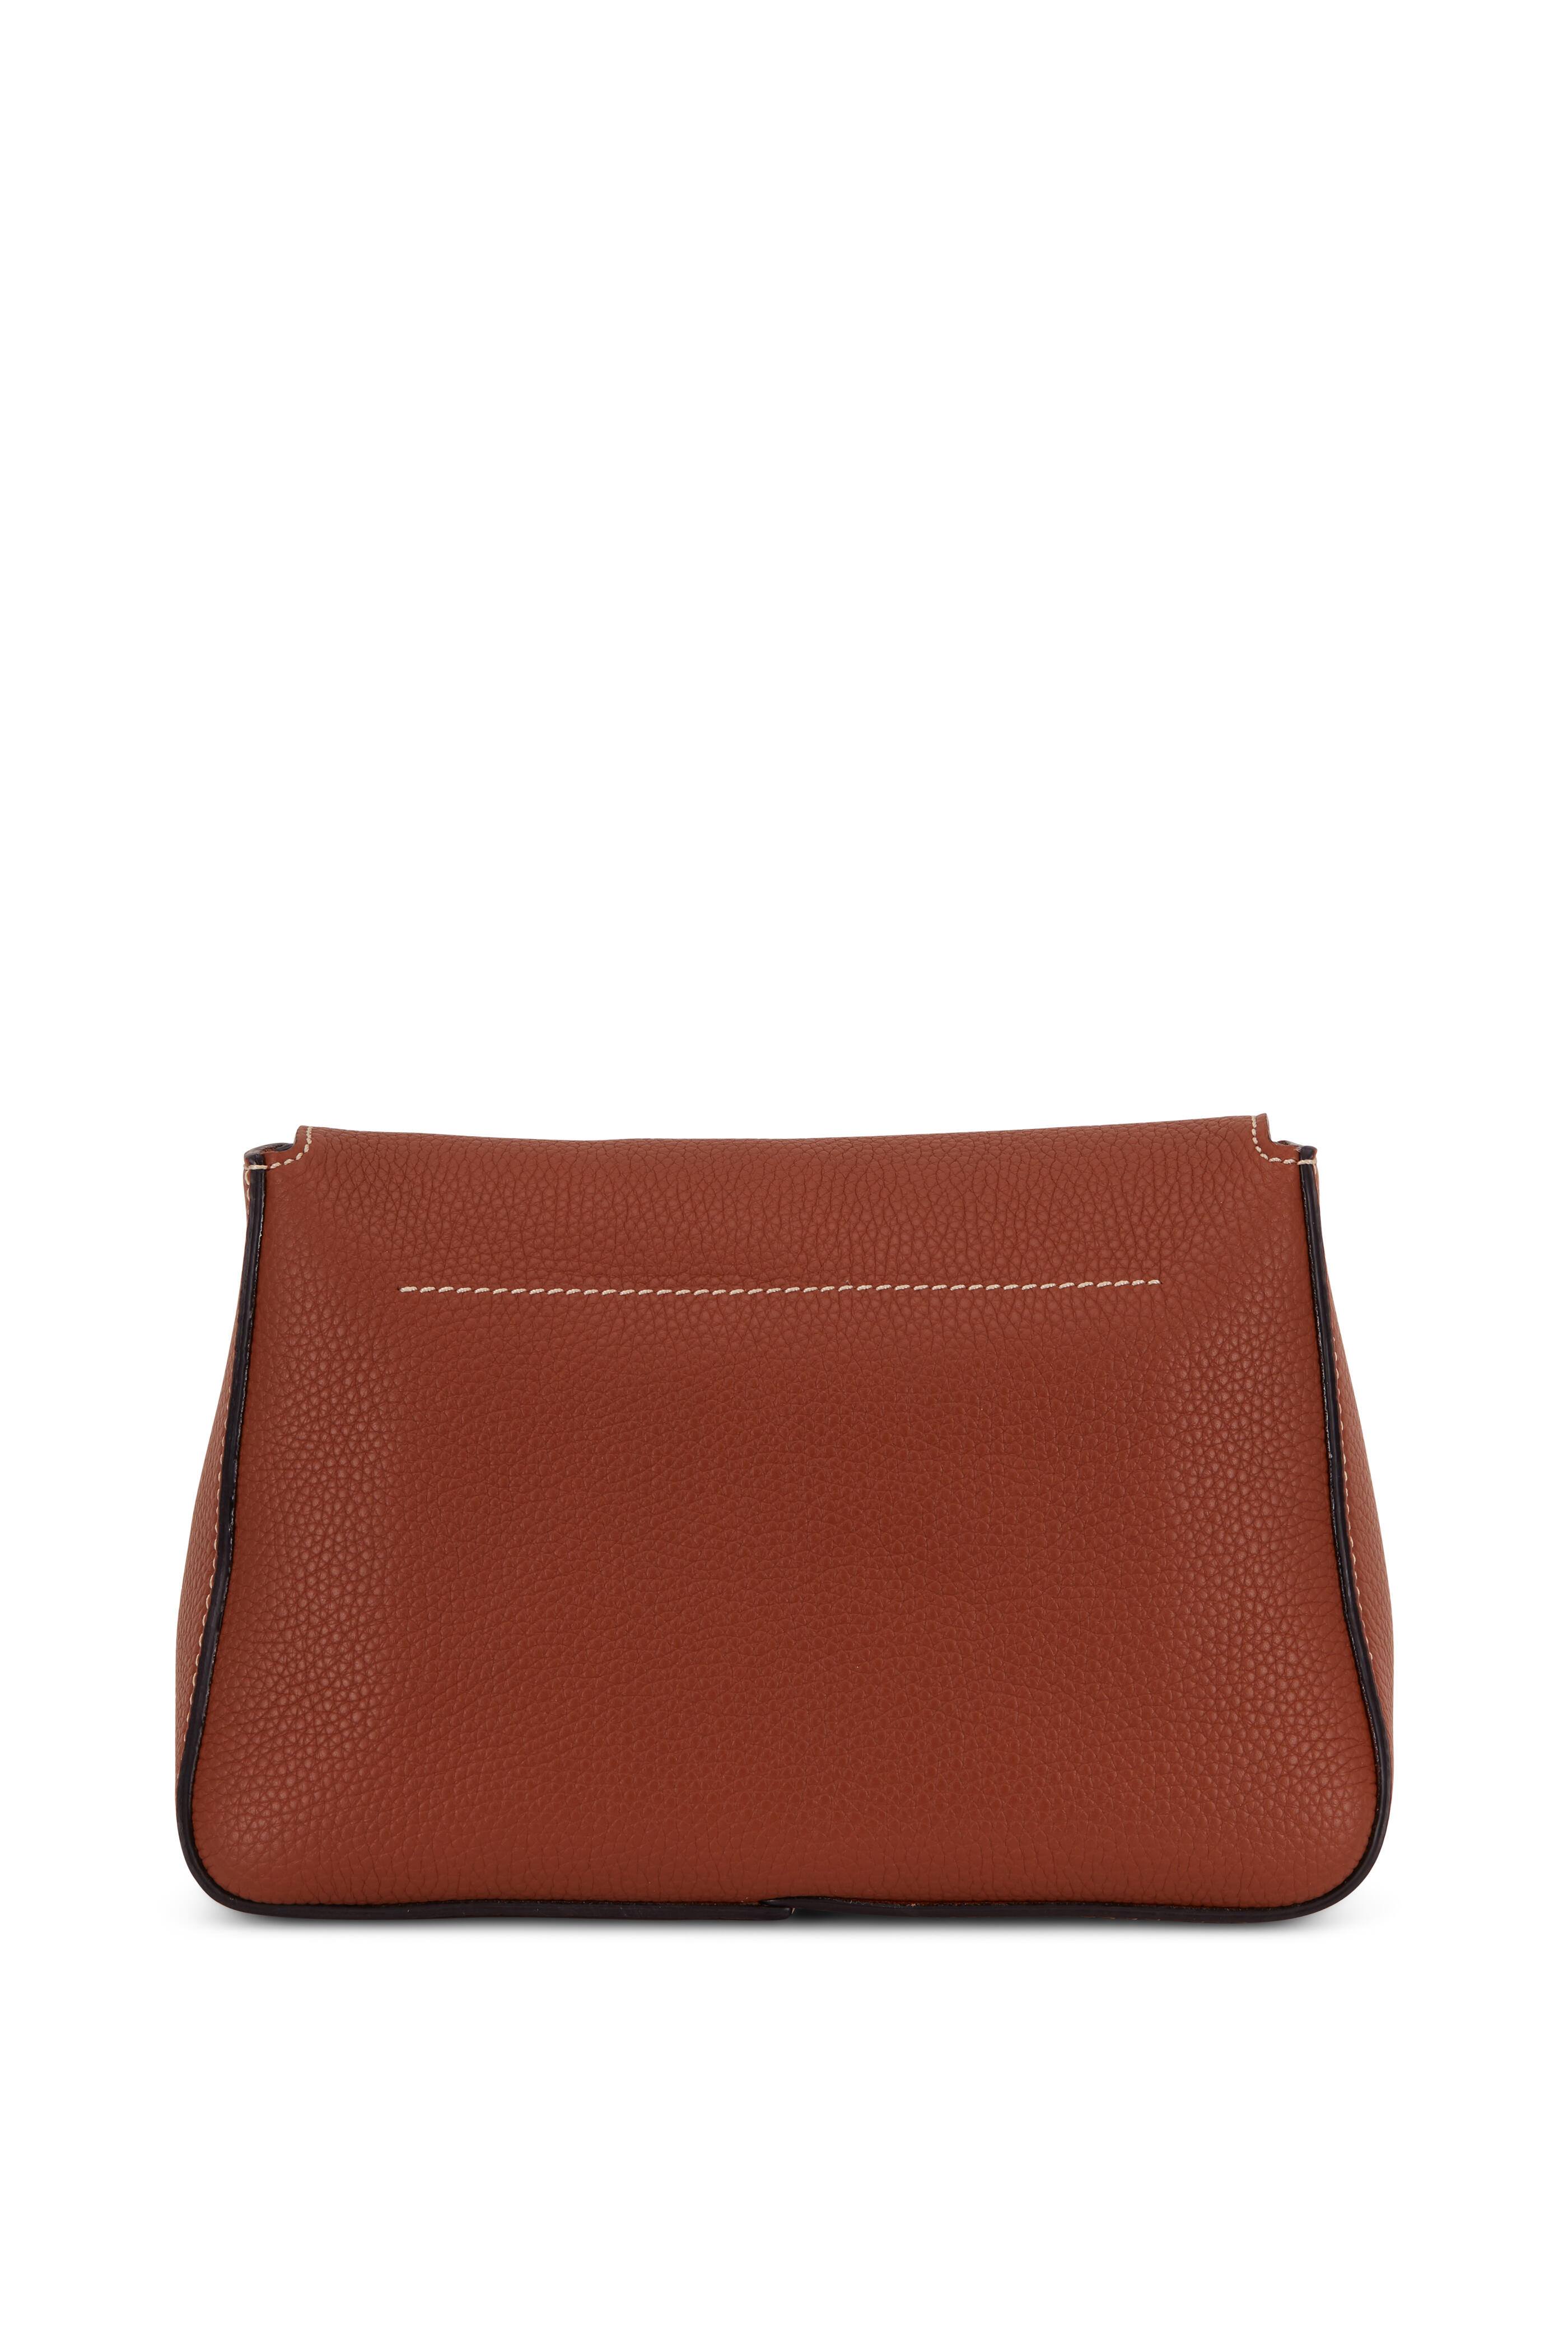 Valentino Garavani 'VSling' Small Shoulder Bag Red Gold Leather MSRP $2575